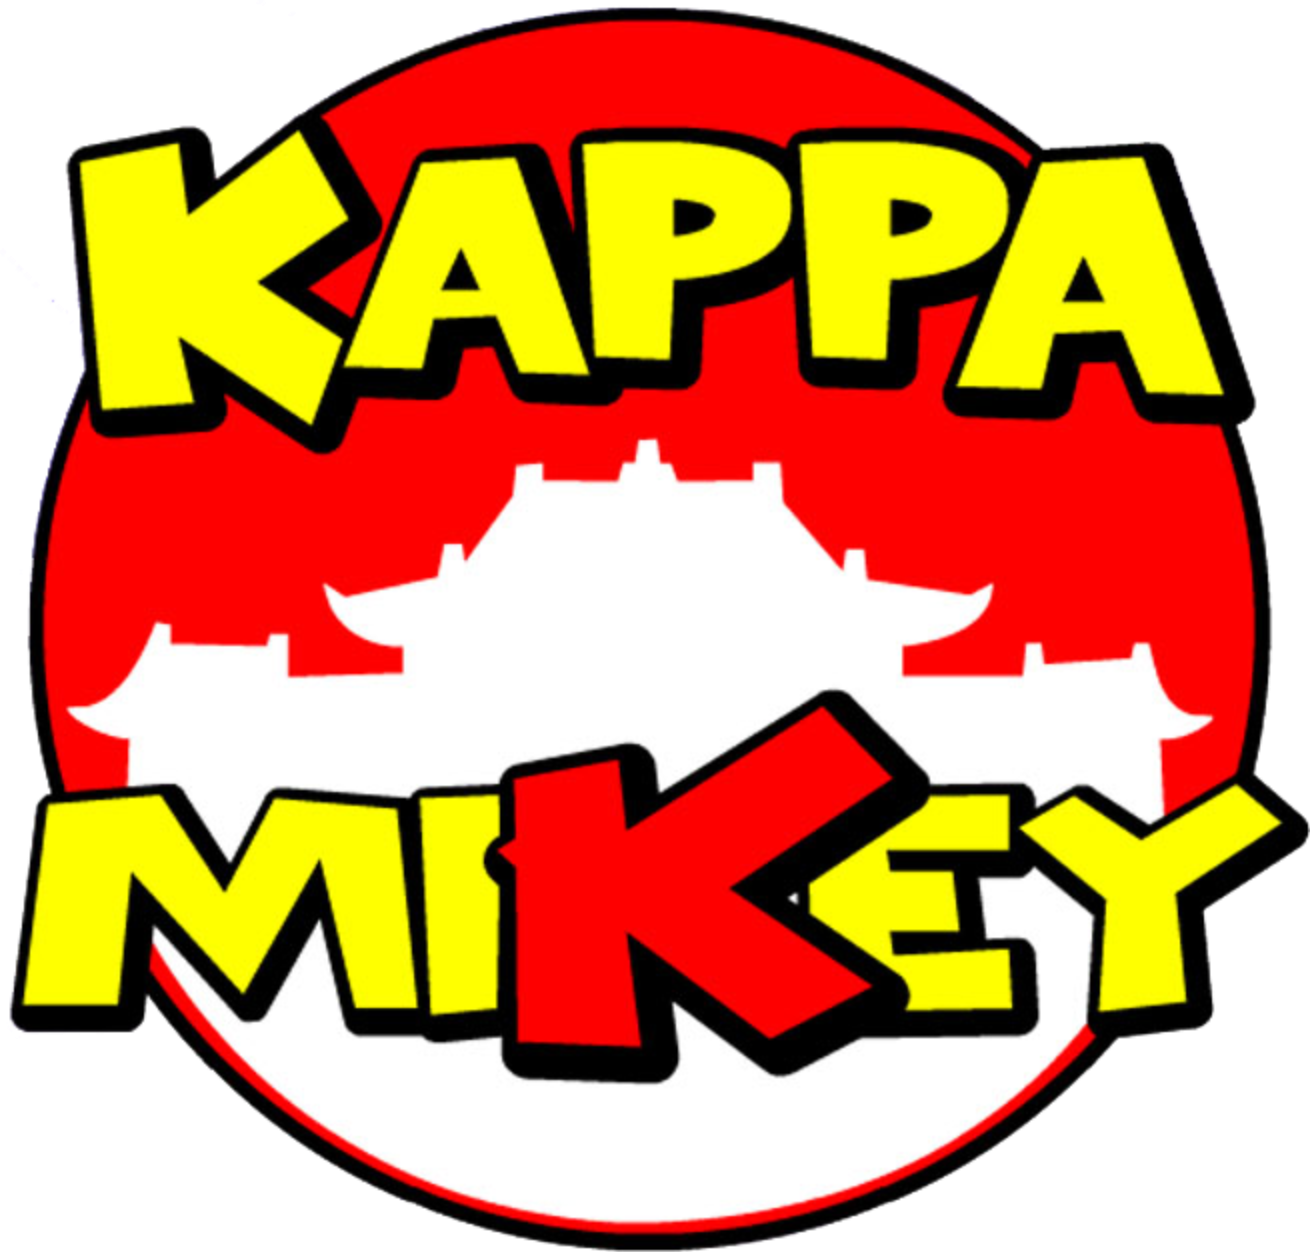 Kappa Mikey 